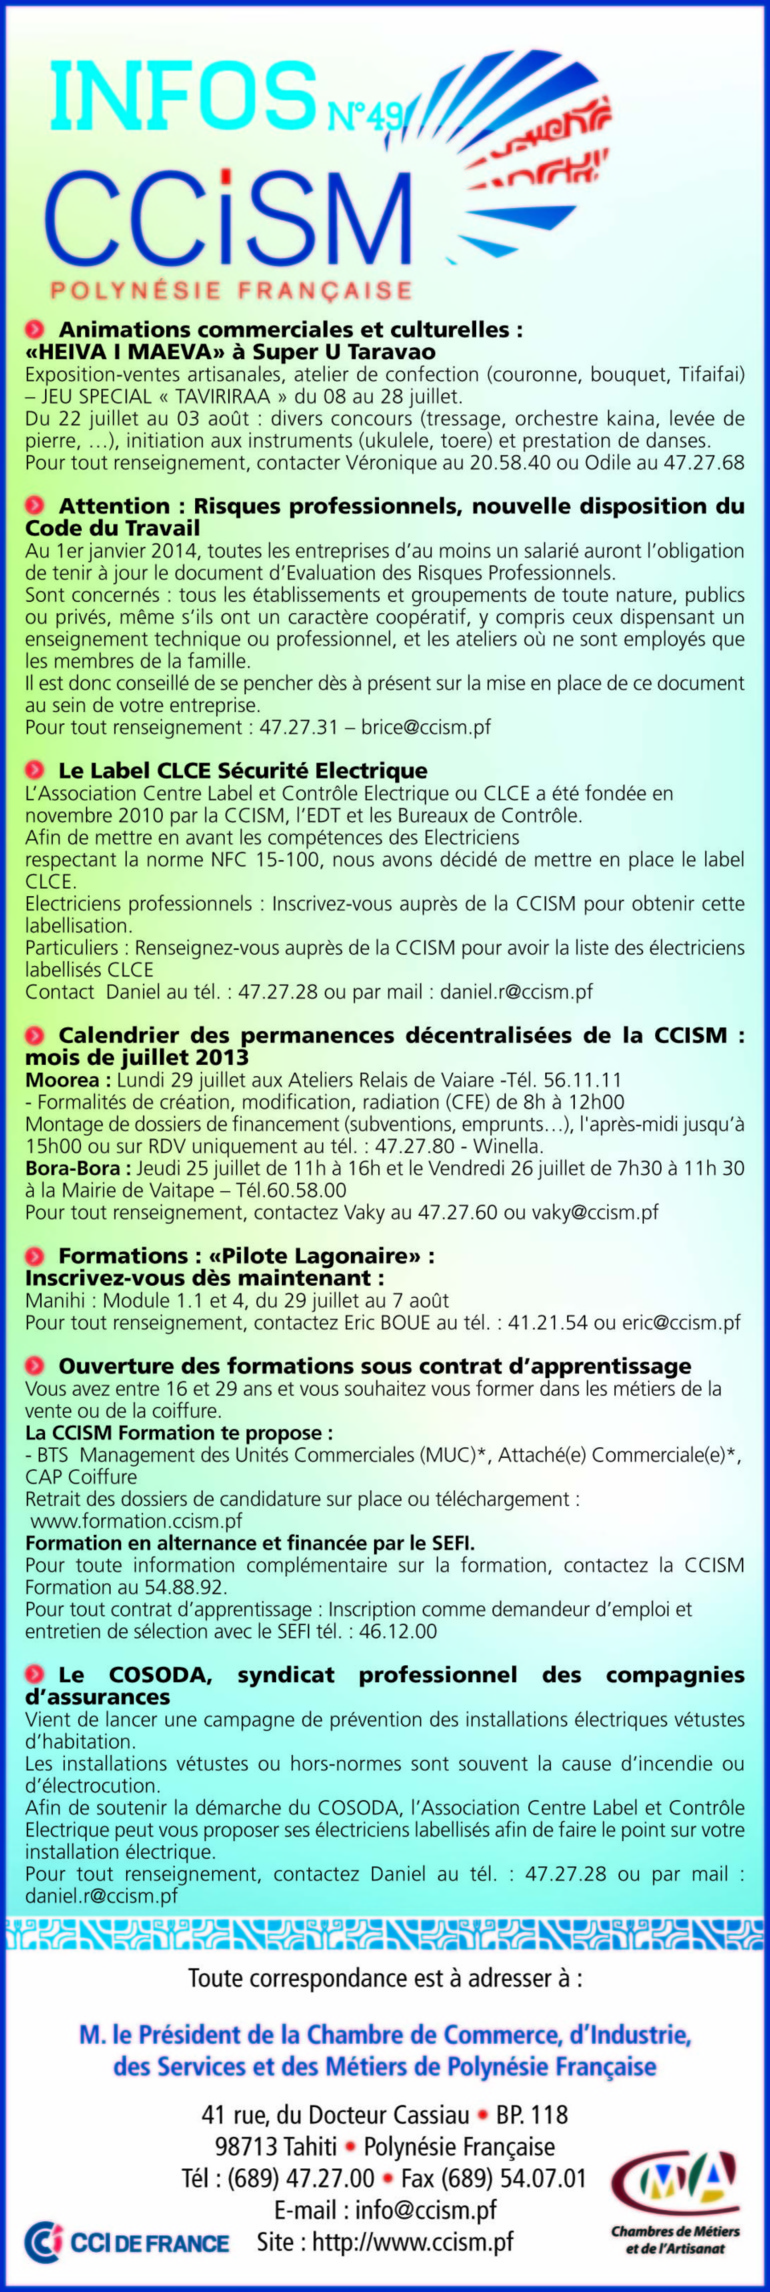 Infos CCISM N°49